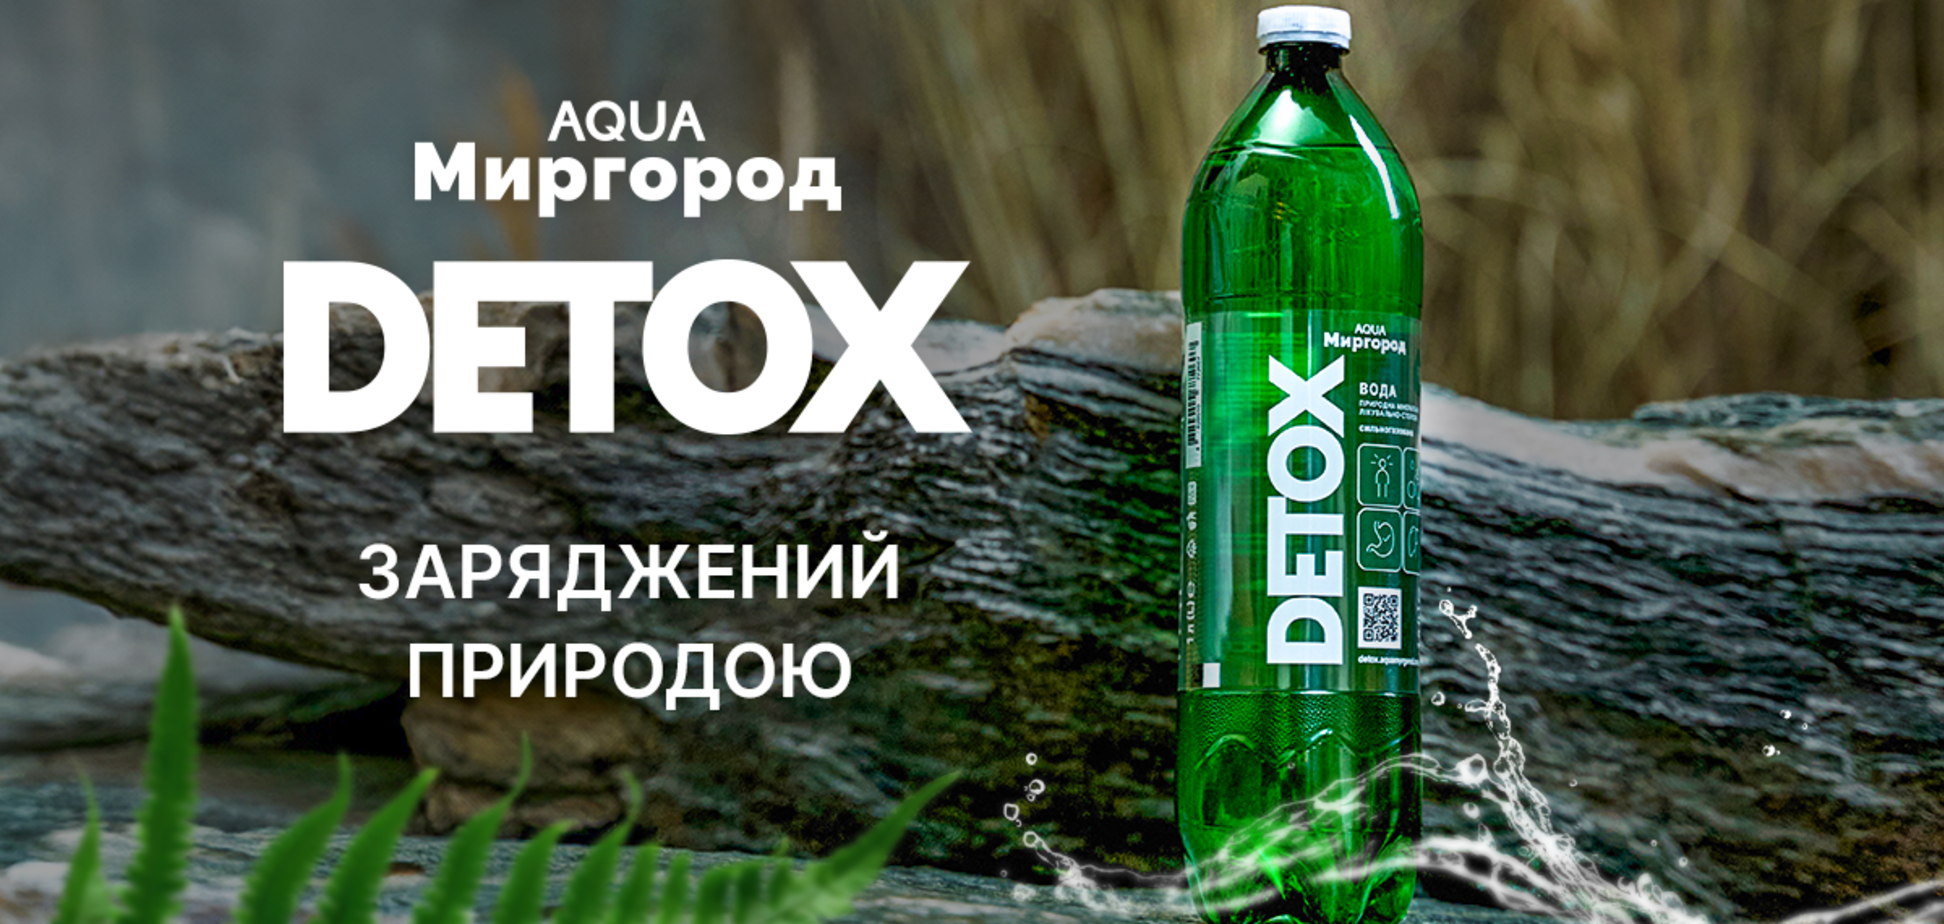 В Україні вперше за 20 років запрацювати завод із виробництва мінеральної води Аqua Миргород